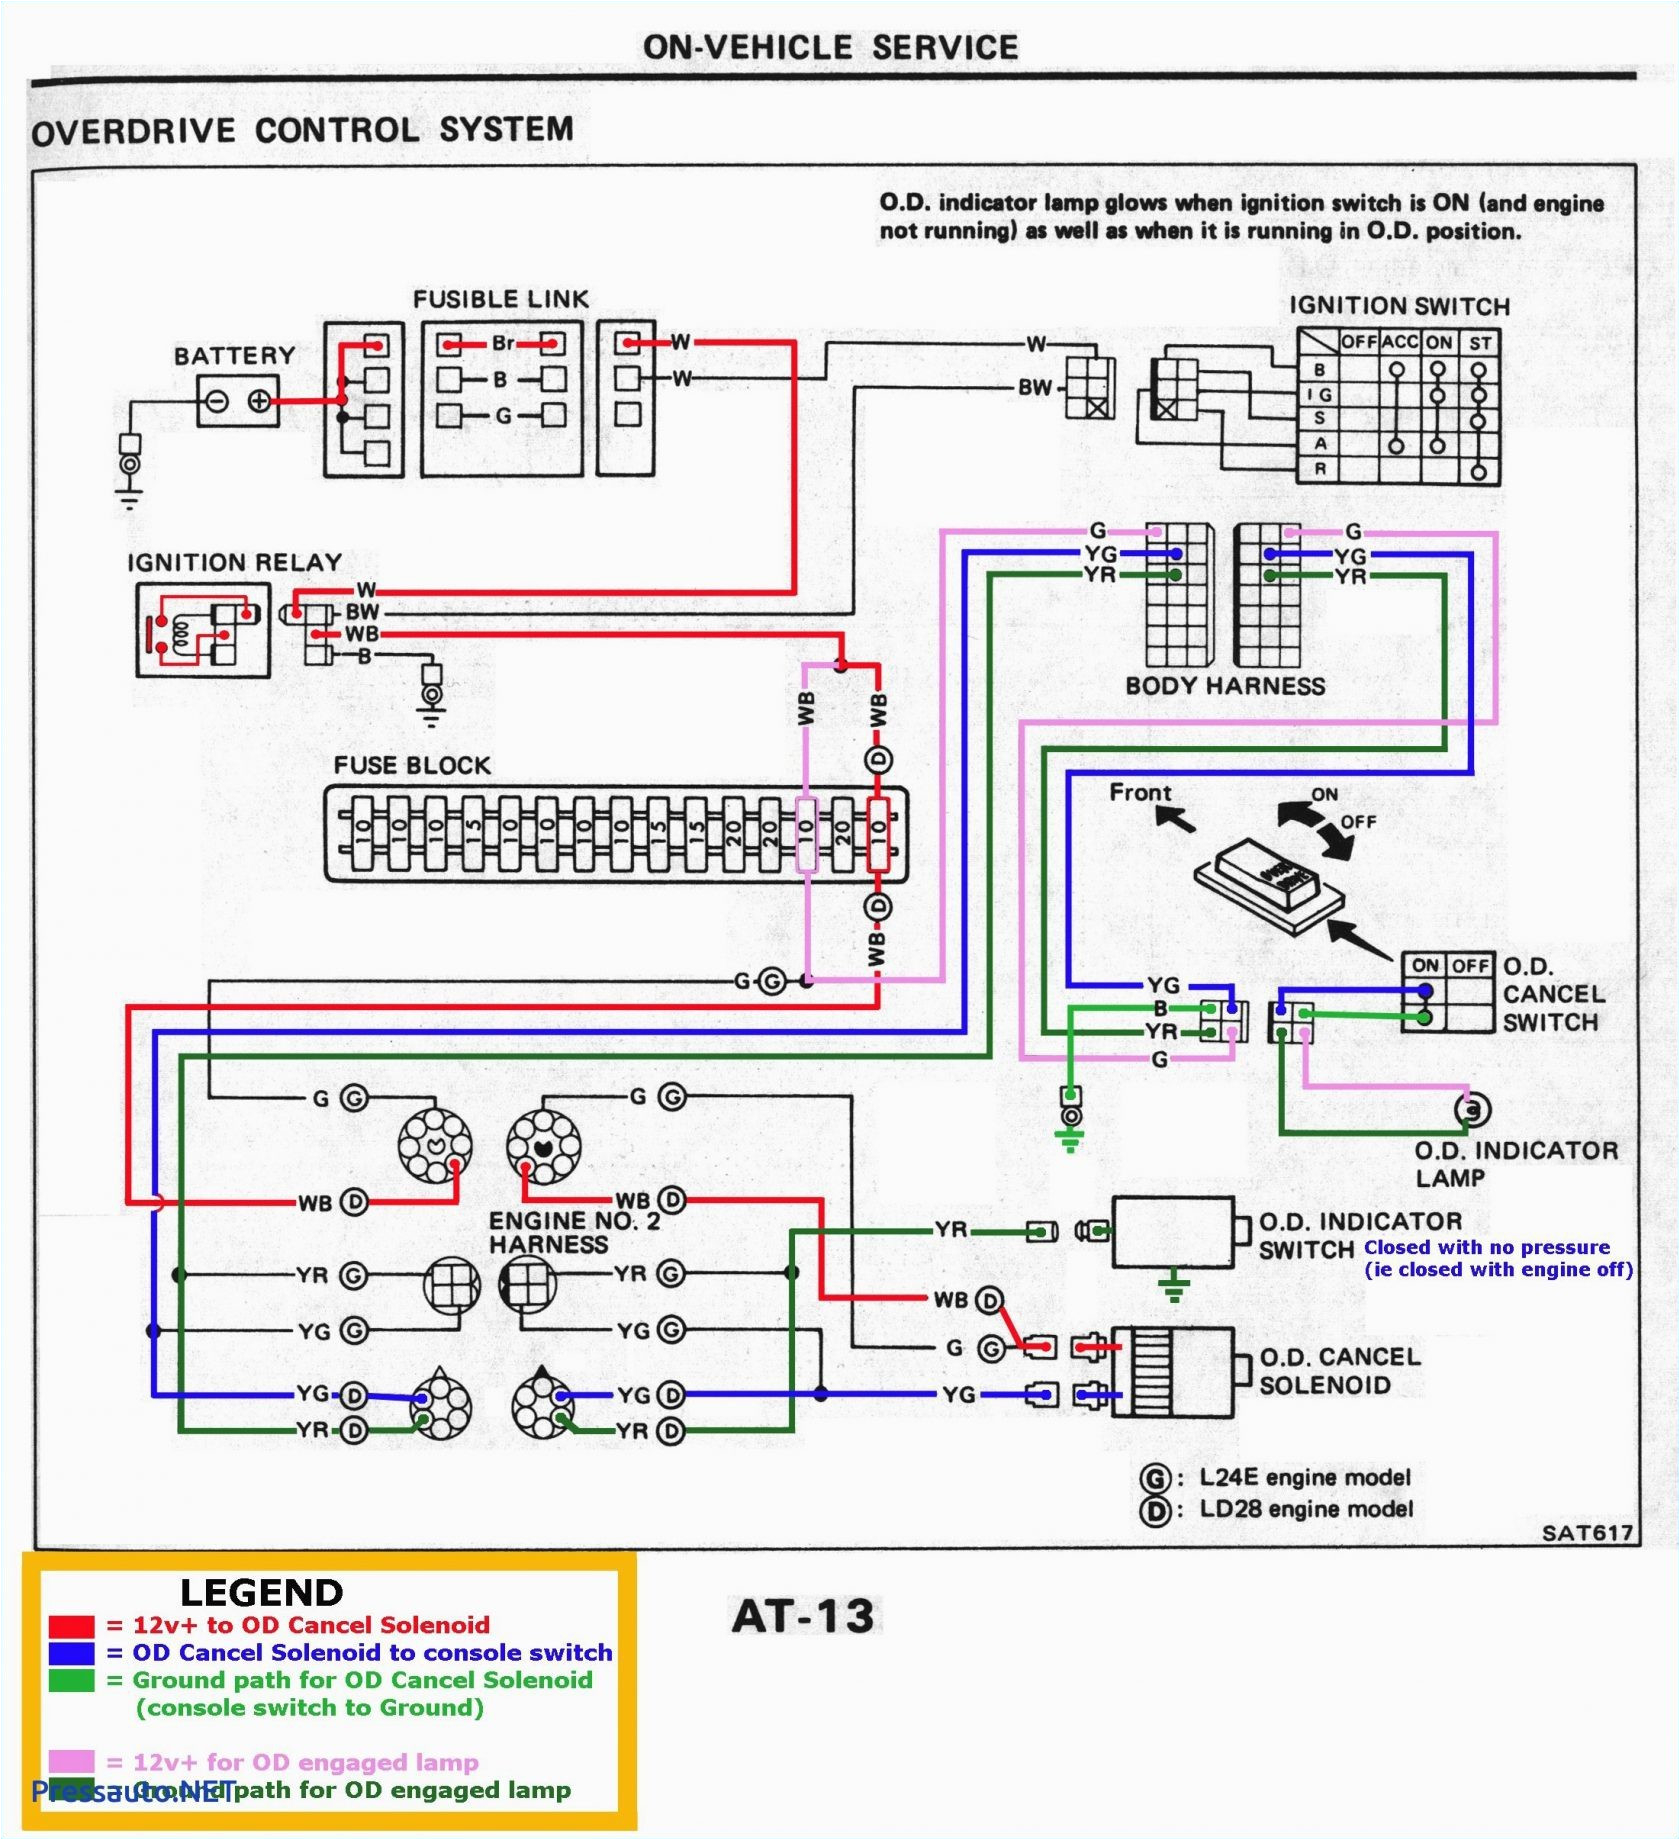 cctv camera wiring diagram pdf wiring diagram namecctv wiring diagram wiring diagram show cctv 12v wiring